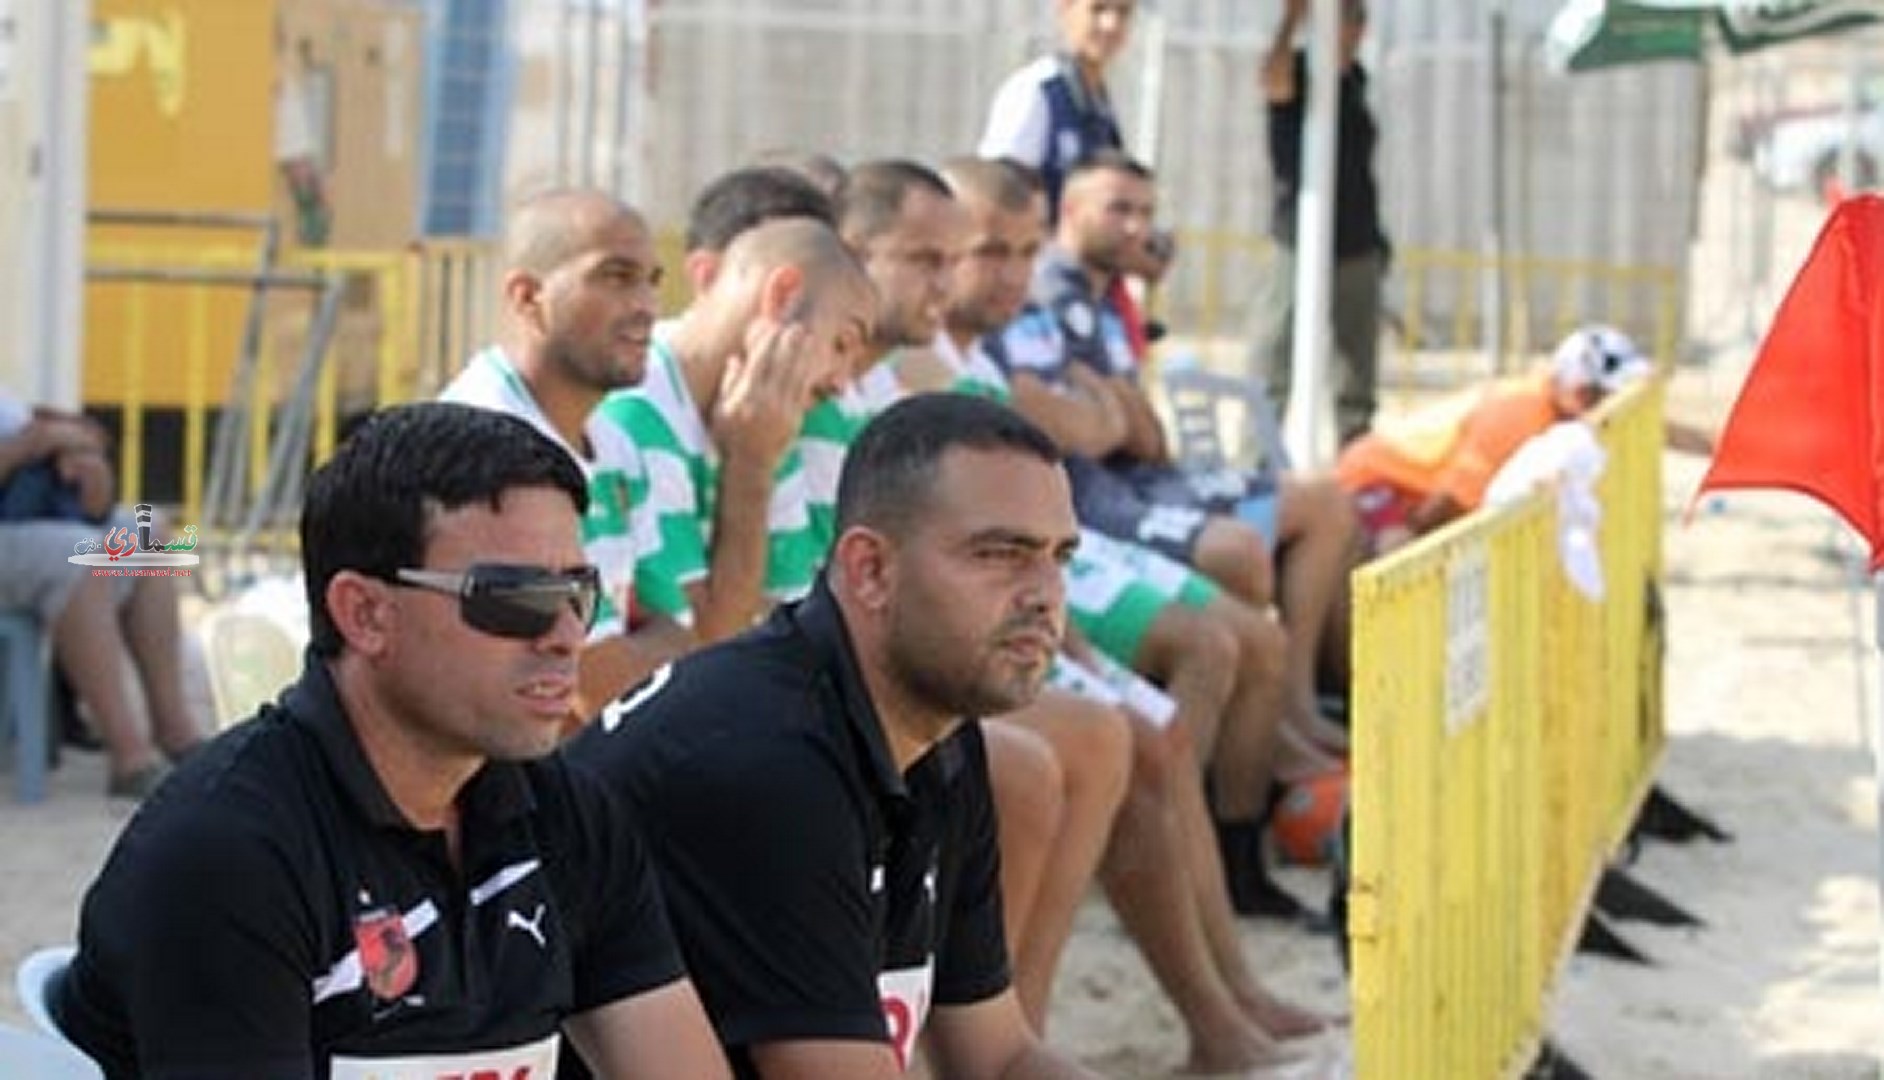 فلفلة يسحف بيتار القدس 4-1 ويتاهل للنصف النهائي امام مكابي حيفا 